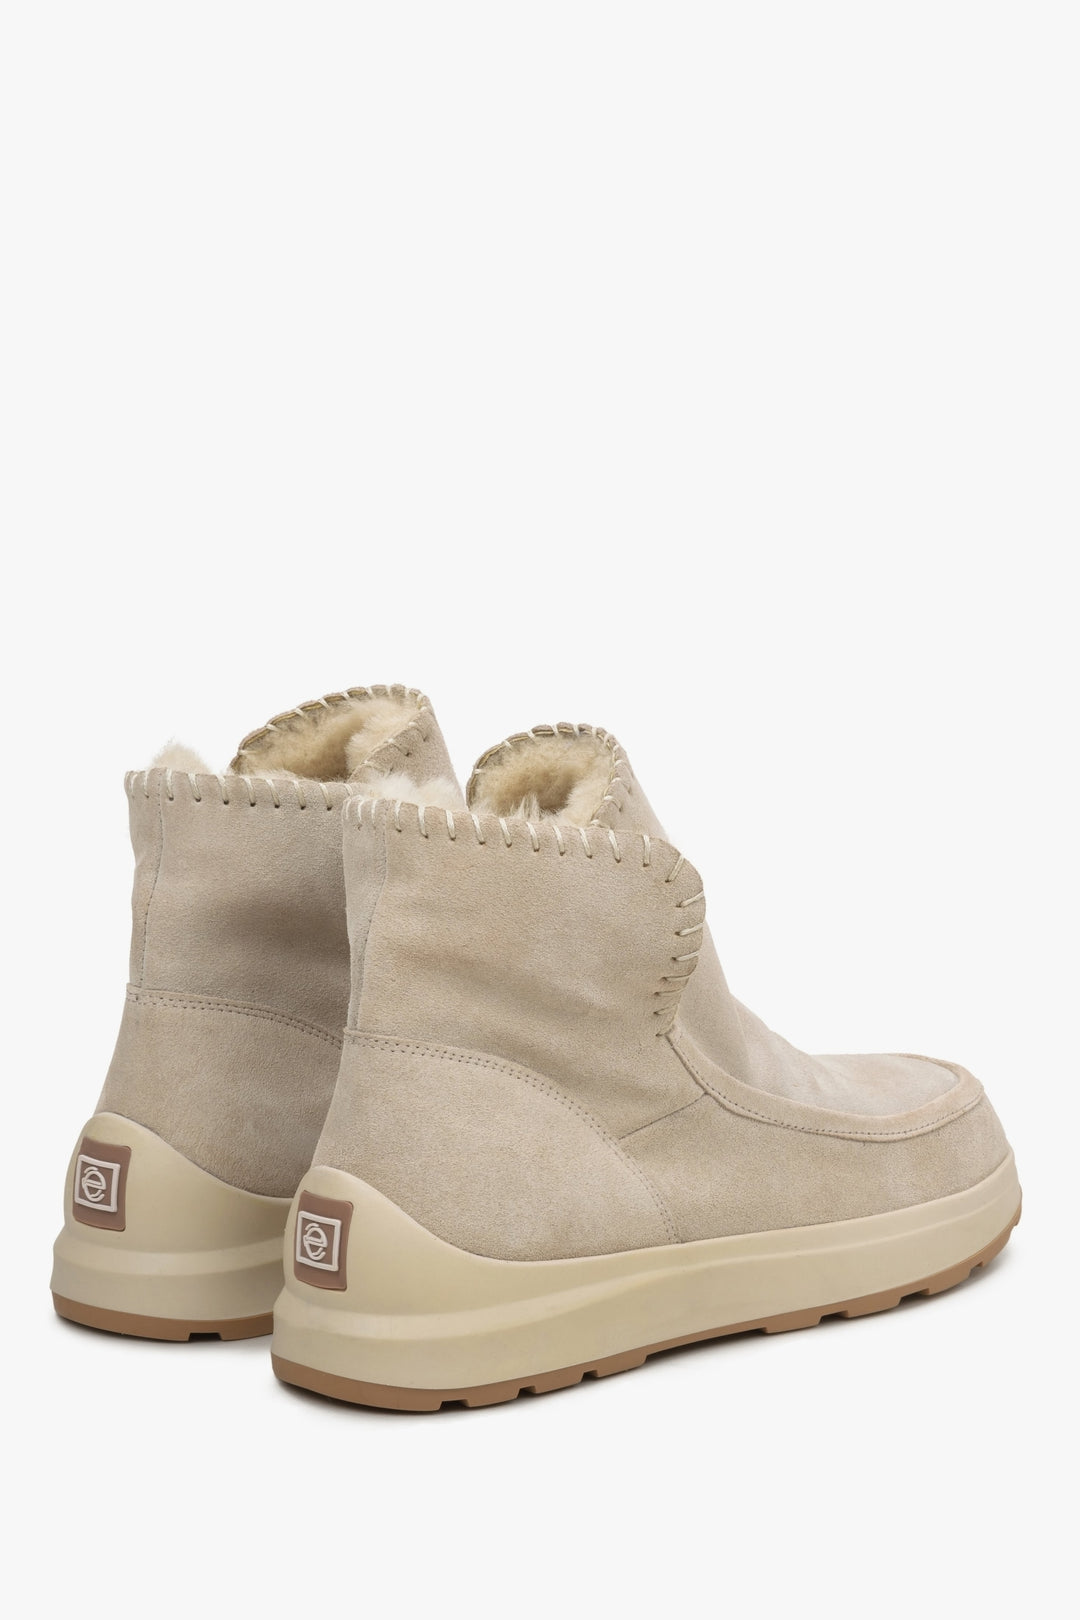 Damskie śniegowce z futra i zamszu naturalnego w kolorze beżowym - zbliżenie na zapiętek i linię boczną butów.